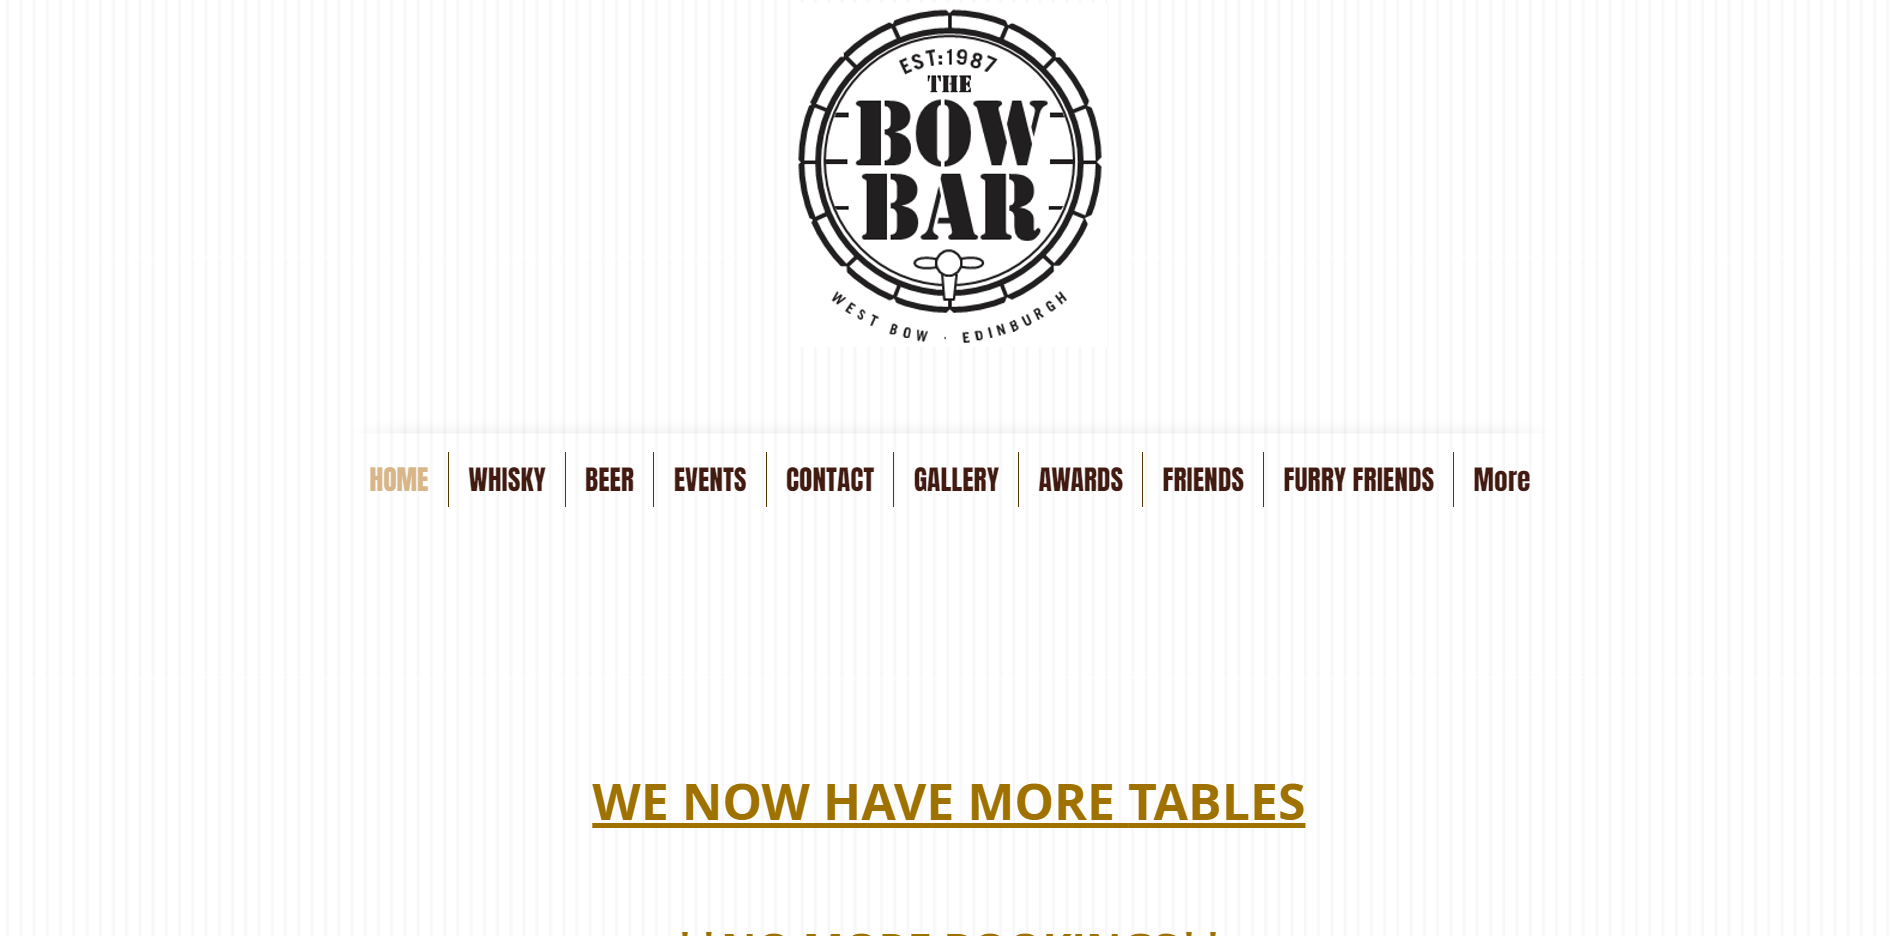 The Bow Bar